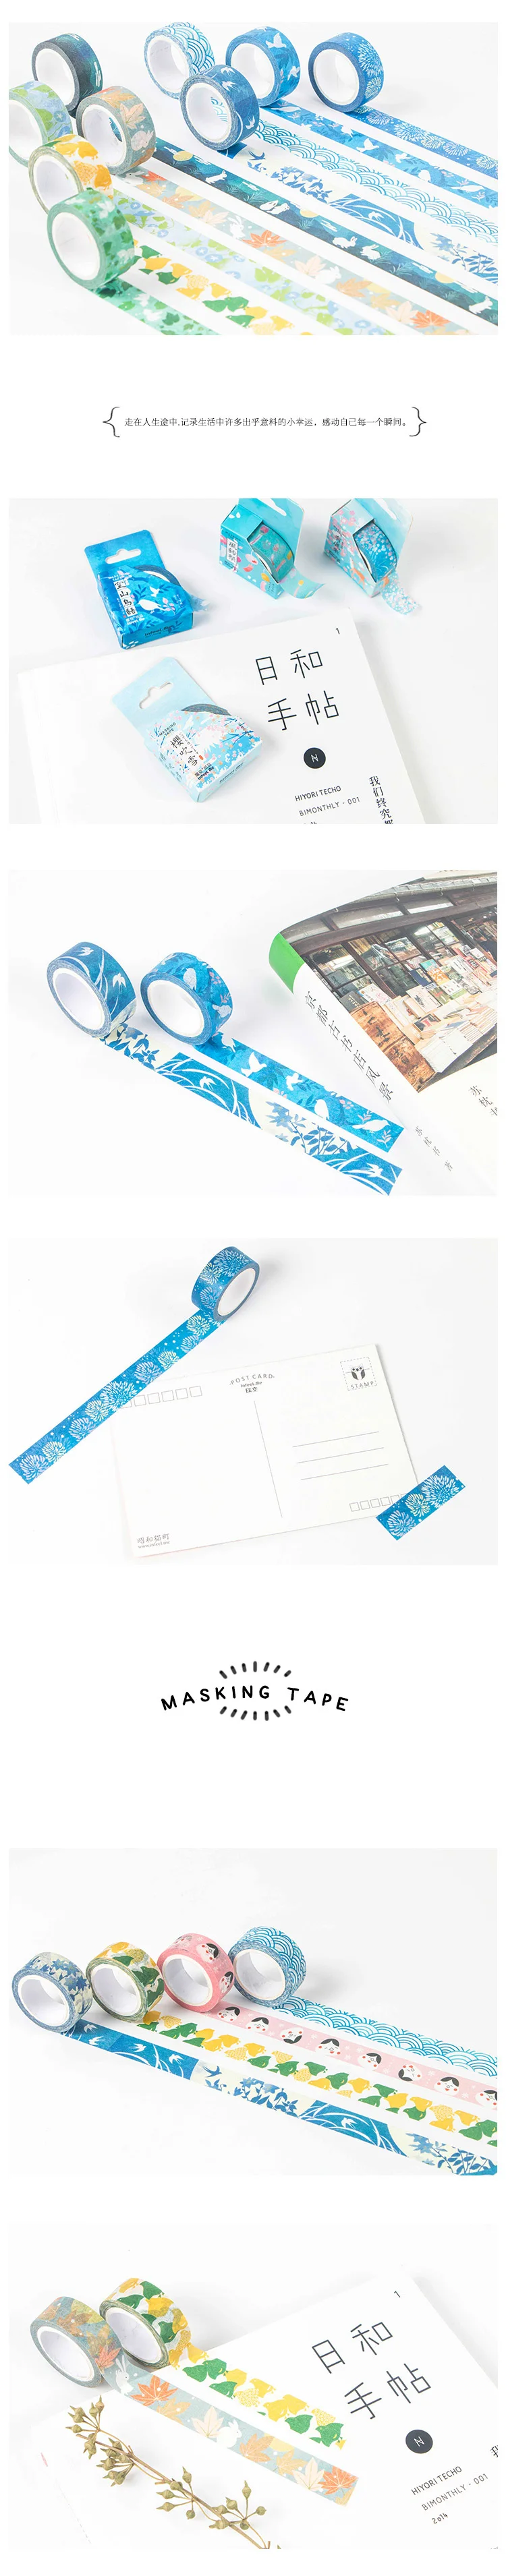 Японский стиль васи лента клейкая лента DIY Скрапбукинг Стикеры фотоальбом этикетка лента клейкая лента 15 мм* 7 м kyoto украшения